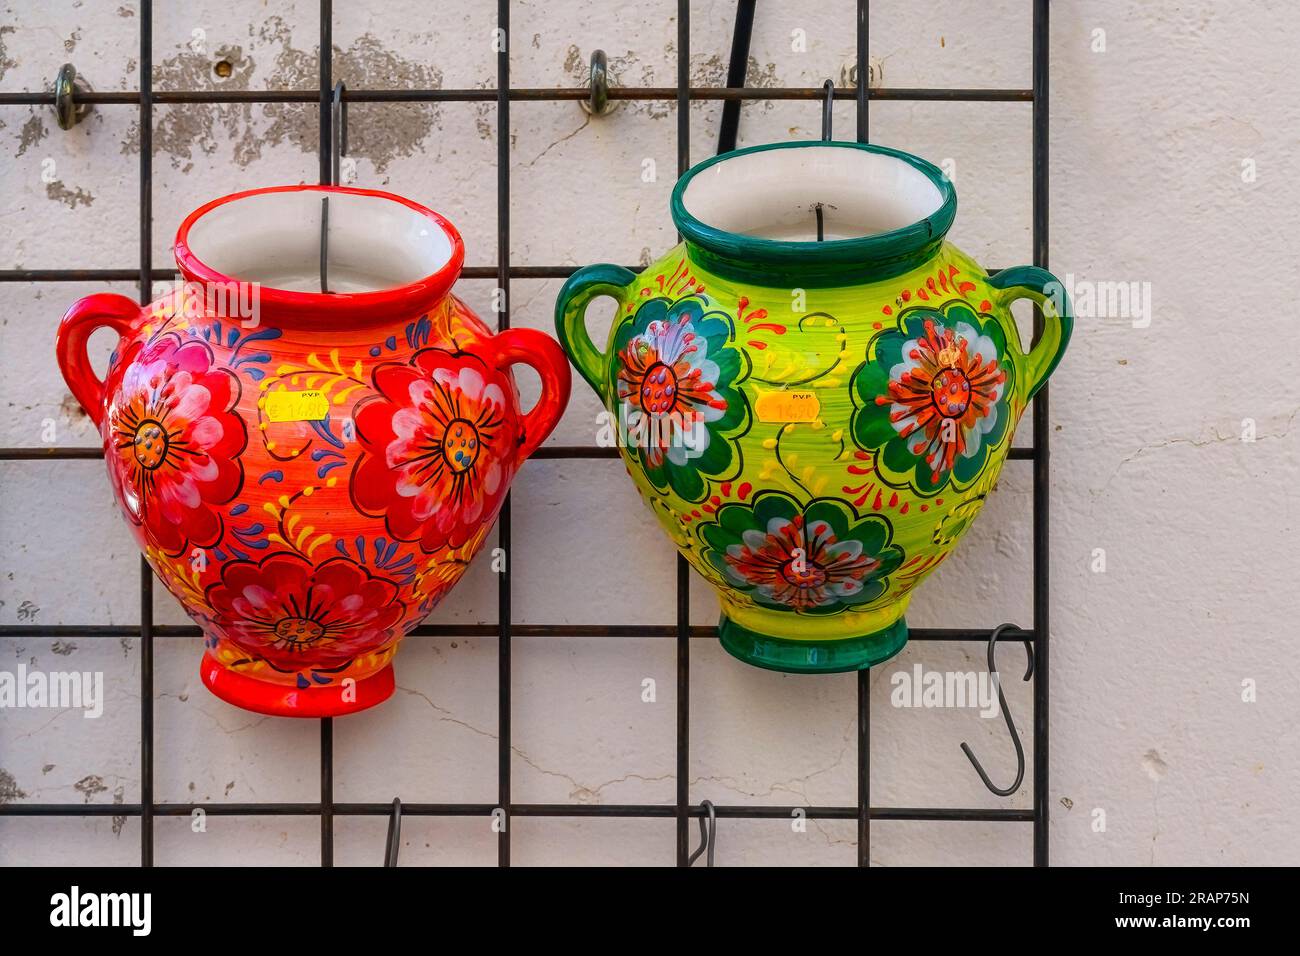 Guadalest, Alicante, Spagna - 14 gennaio 2023: Due vasi in porcellana con manici. I contenitori presentano motivi floreali. Foto Stock